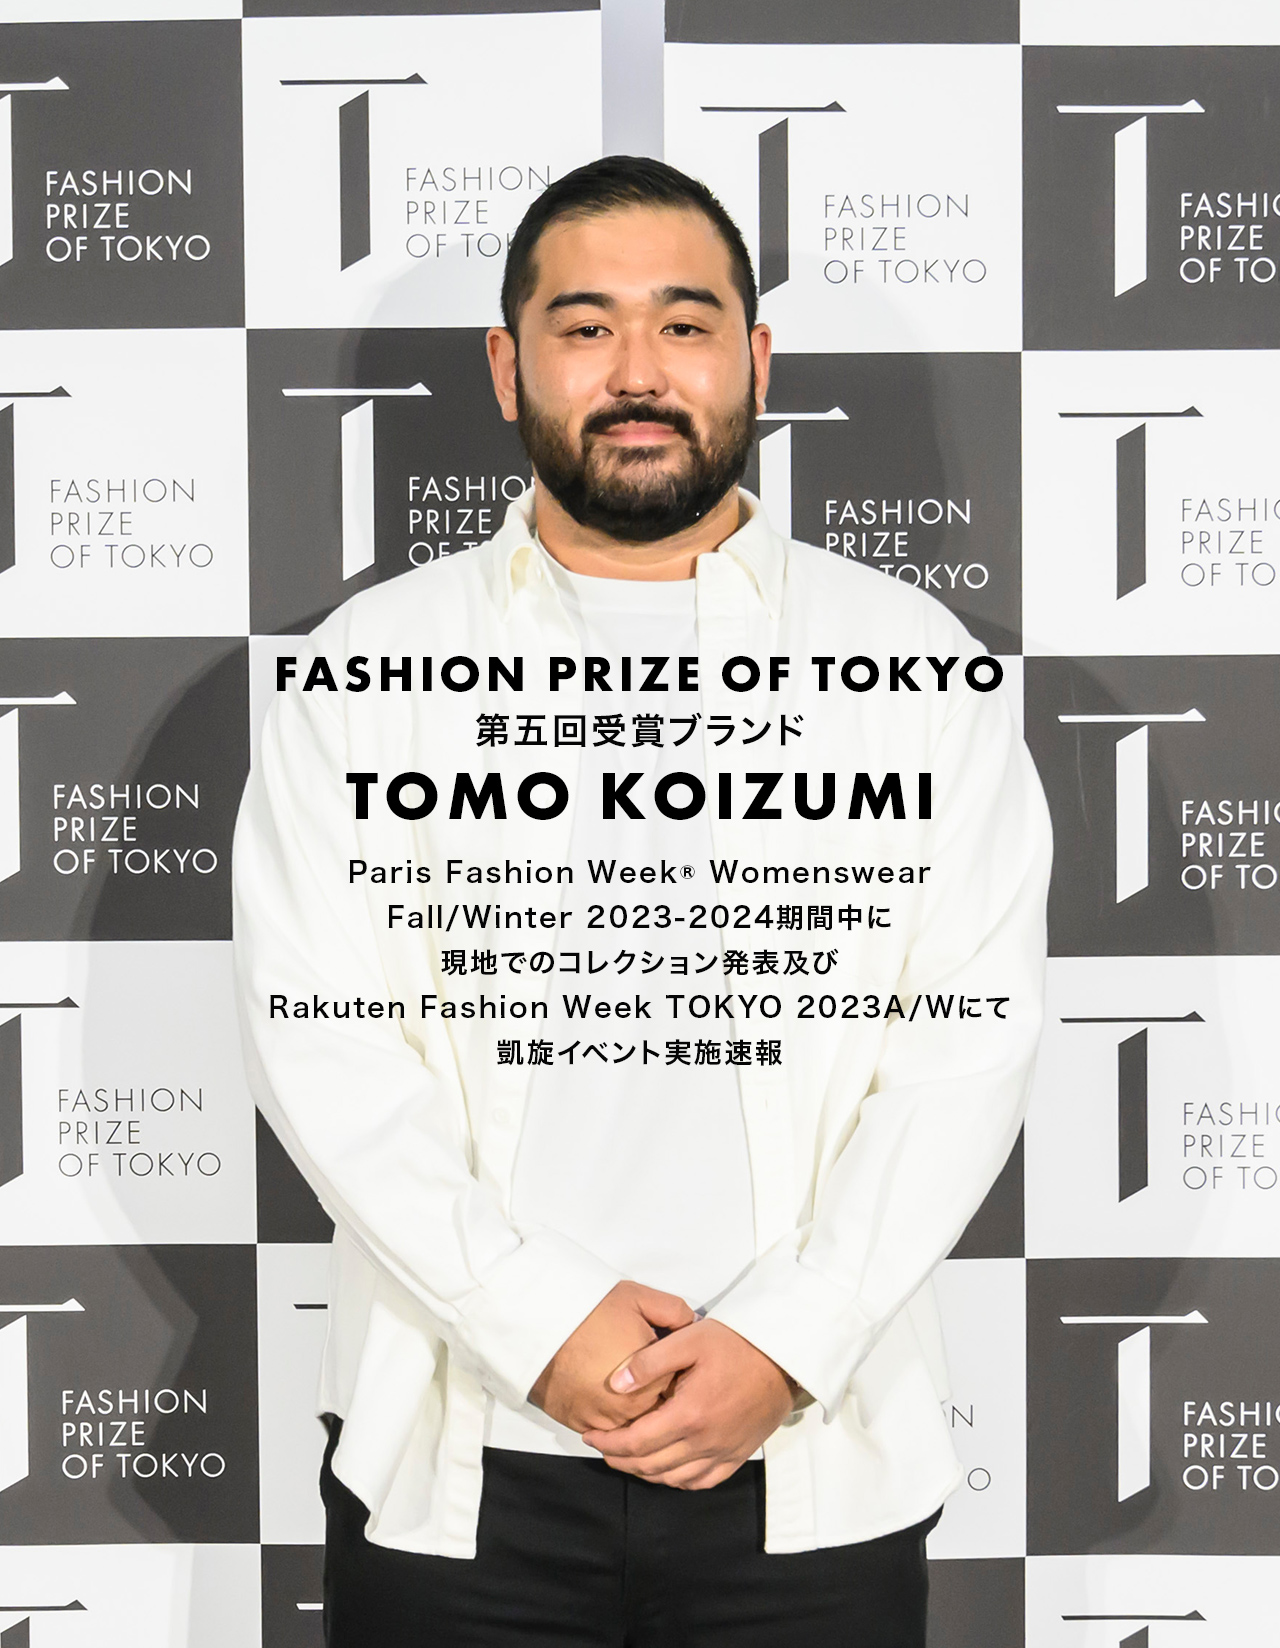 小泉 智貴 / Tomotaka Koizumi  Winner Interview